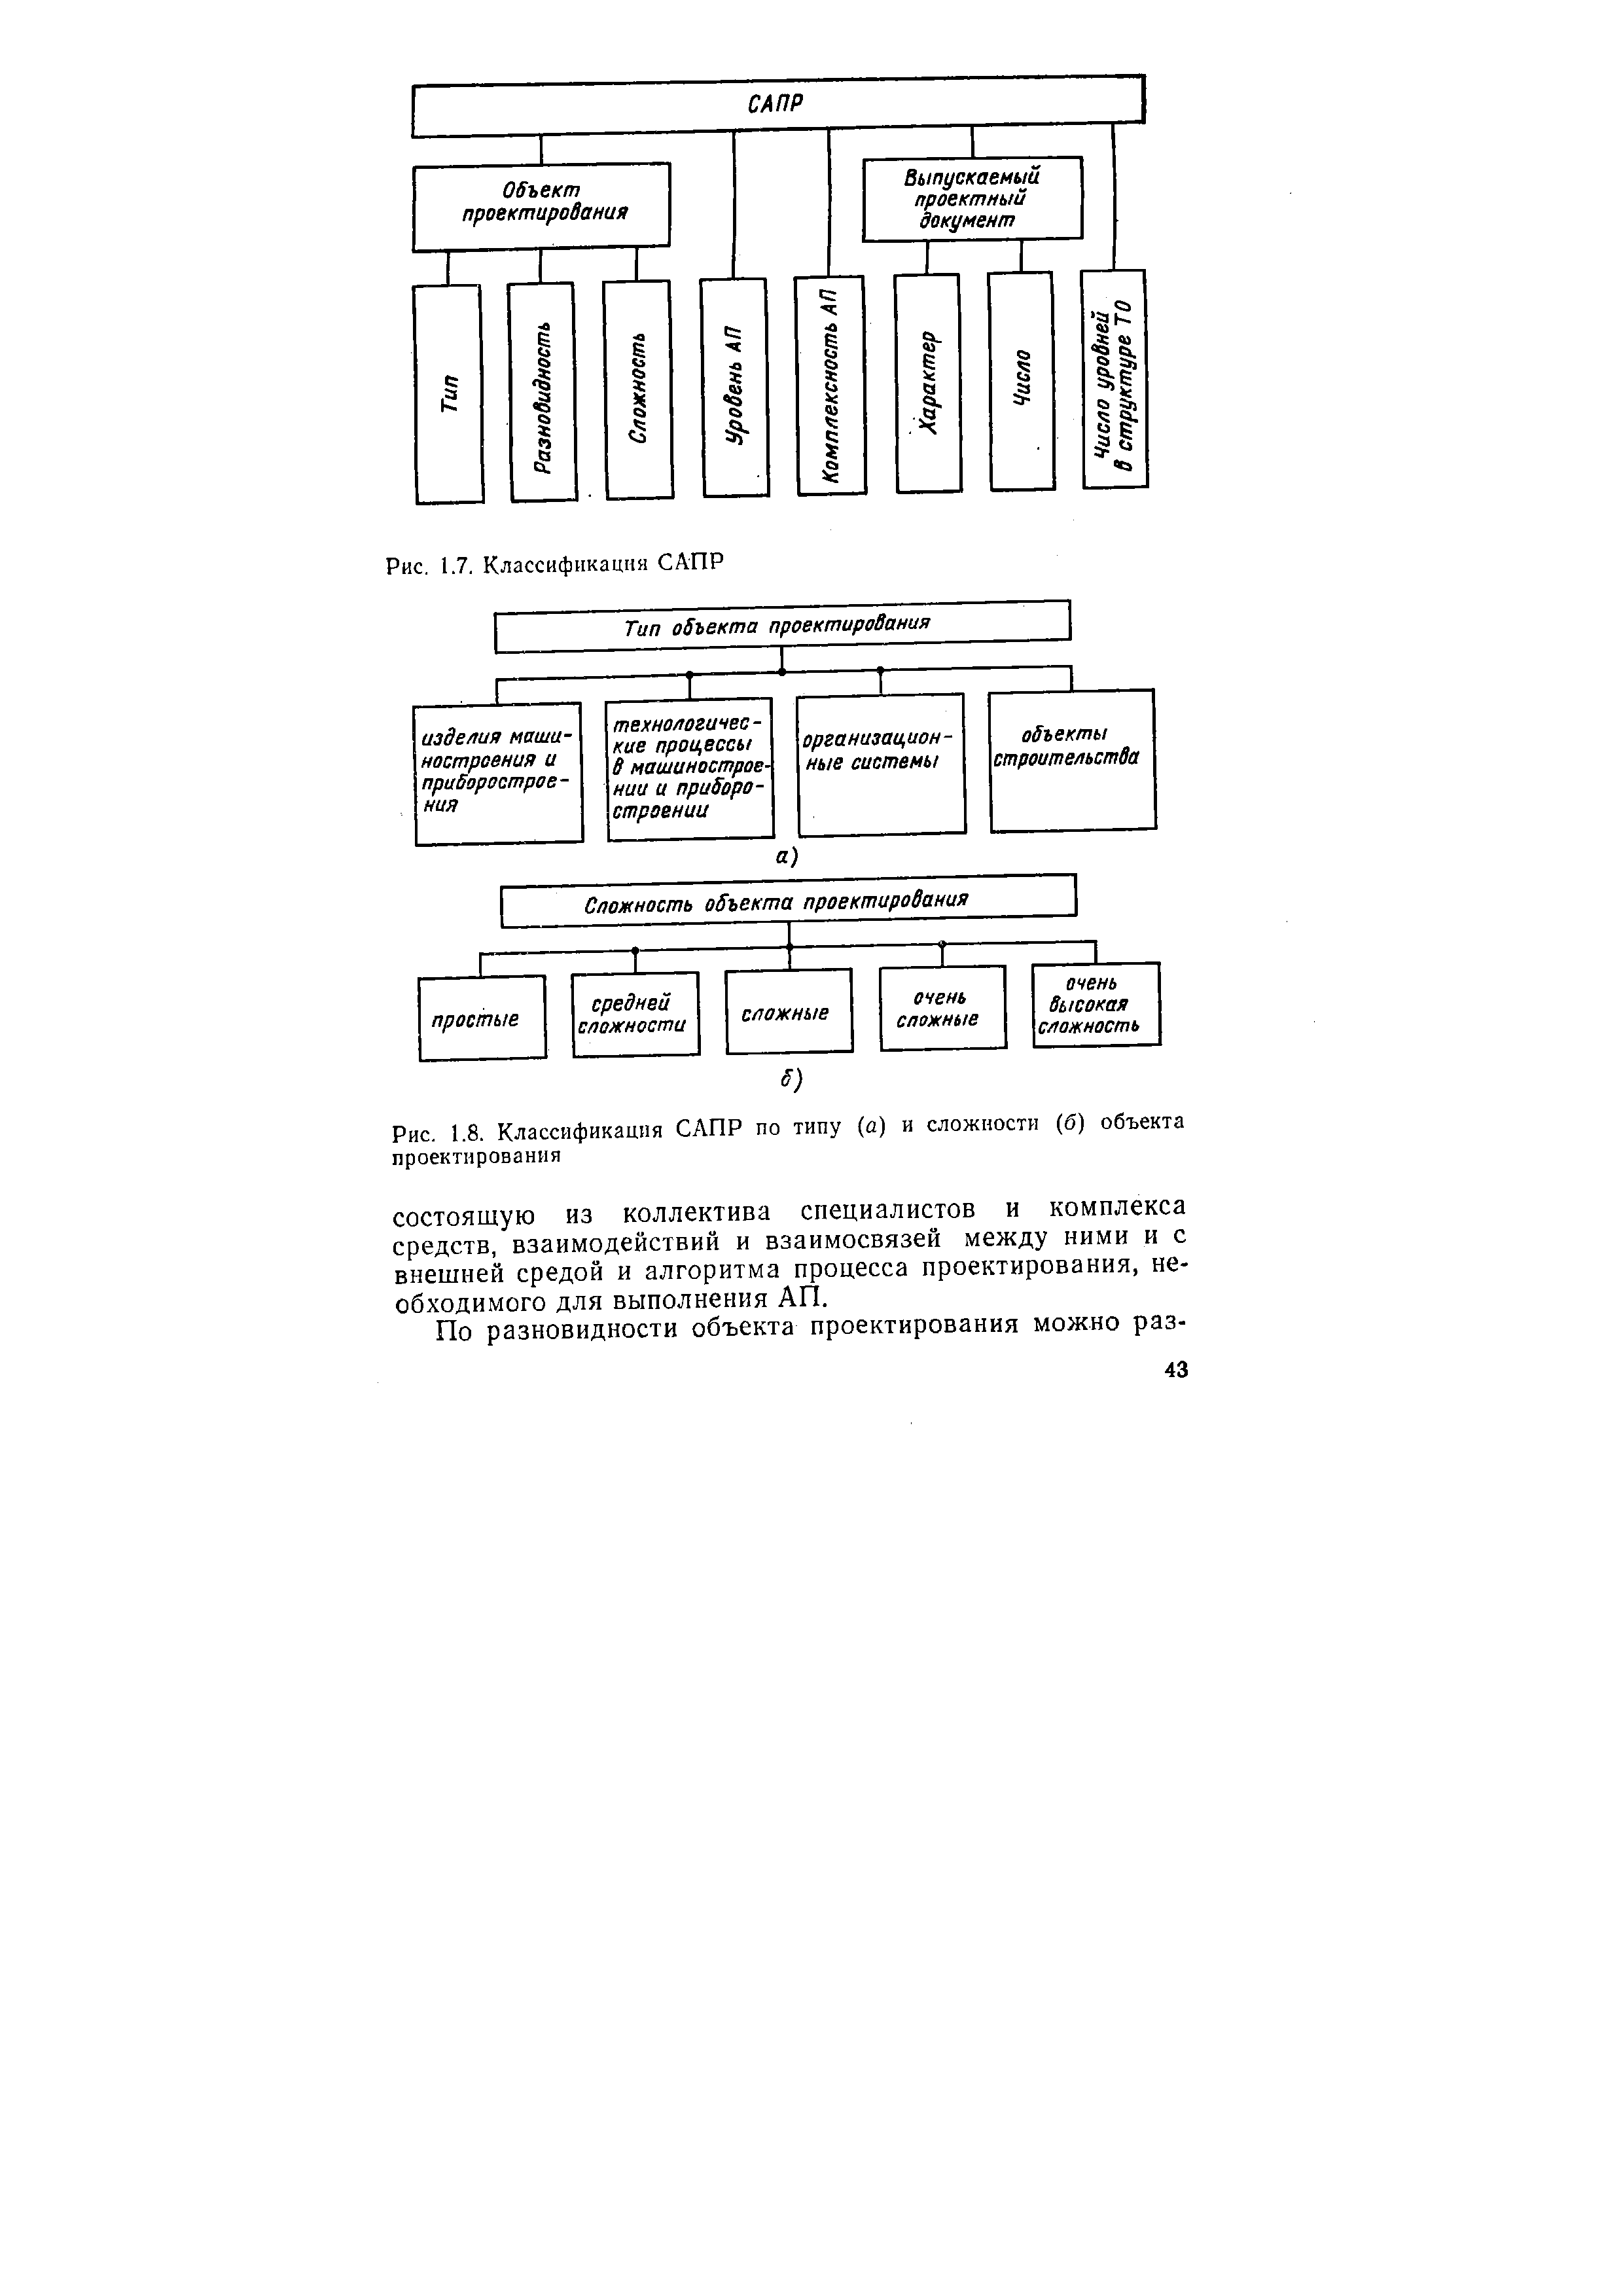 Рис. 1.8. Классификация САПР по типу (а) и сложности (б) объекта проектирования
